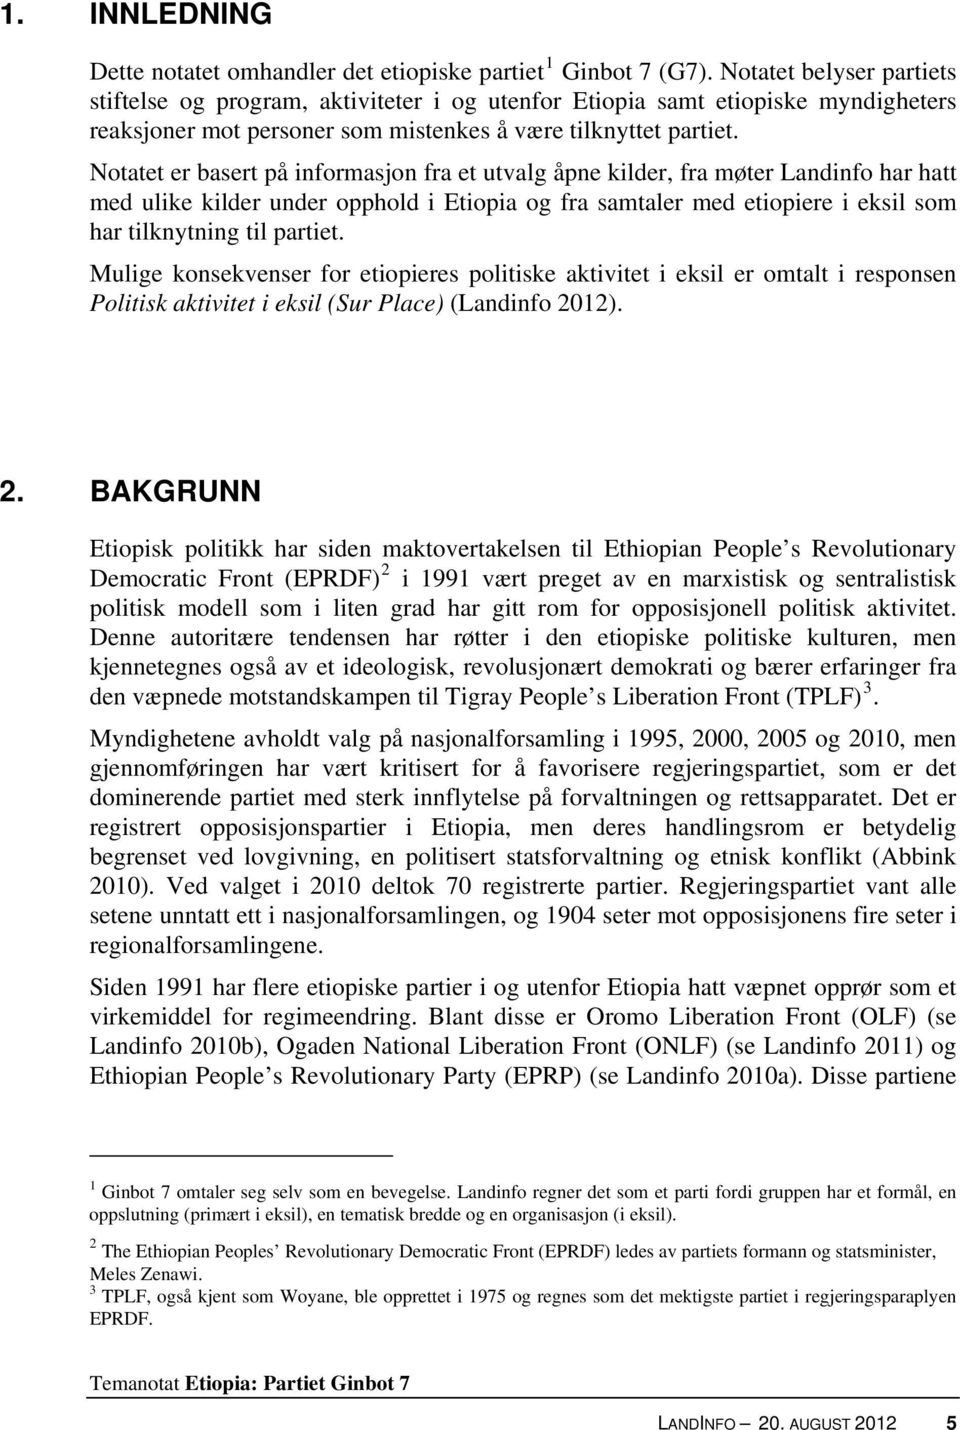 Notatet er basert på informasjon fra et utvalg åpne kilder, fra møter Landinfo har hatt med ulike kilder under opphold i Etiopia og fra samtaler med etiopiere i eksil som har tilknytning til partiet.